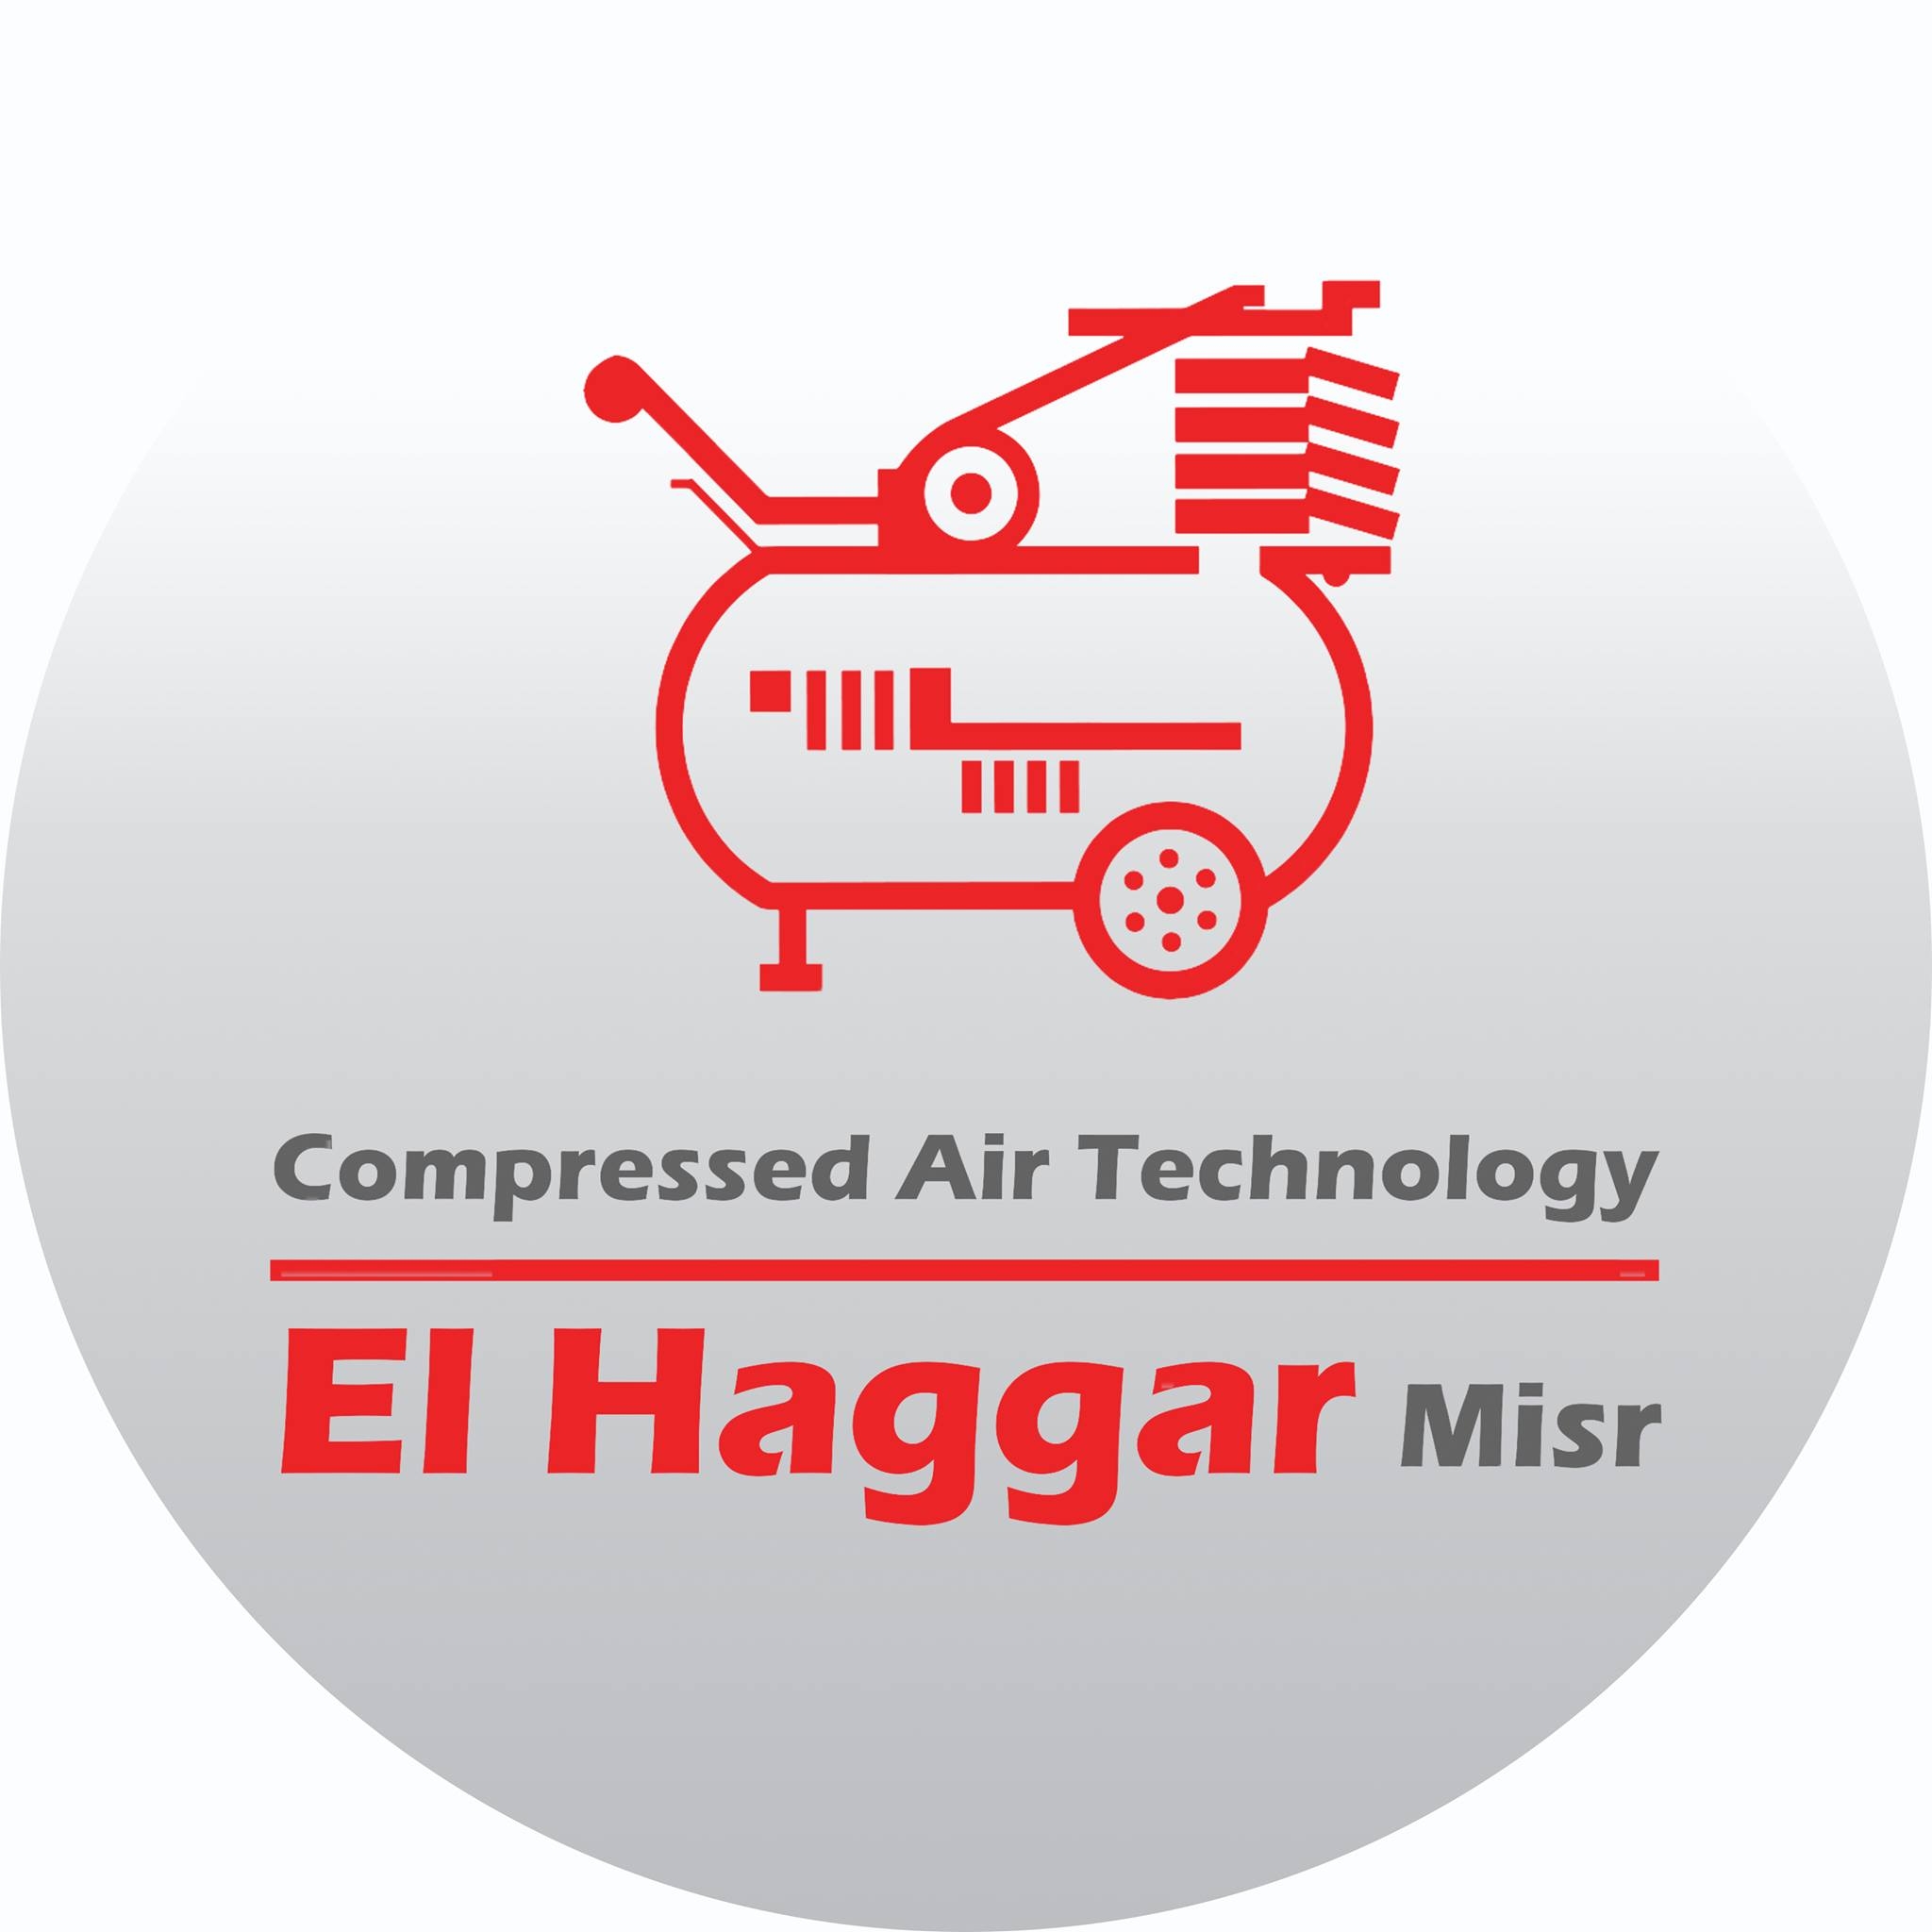 El-Haggar Misr